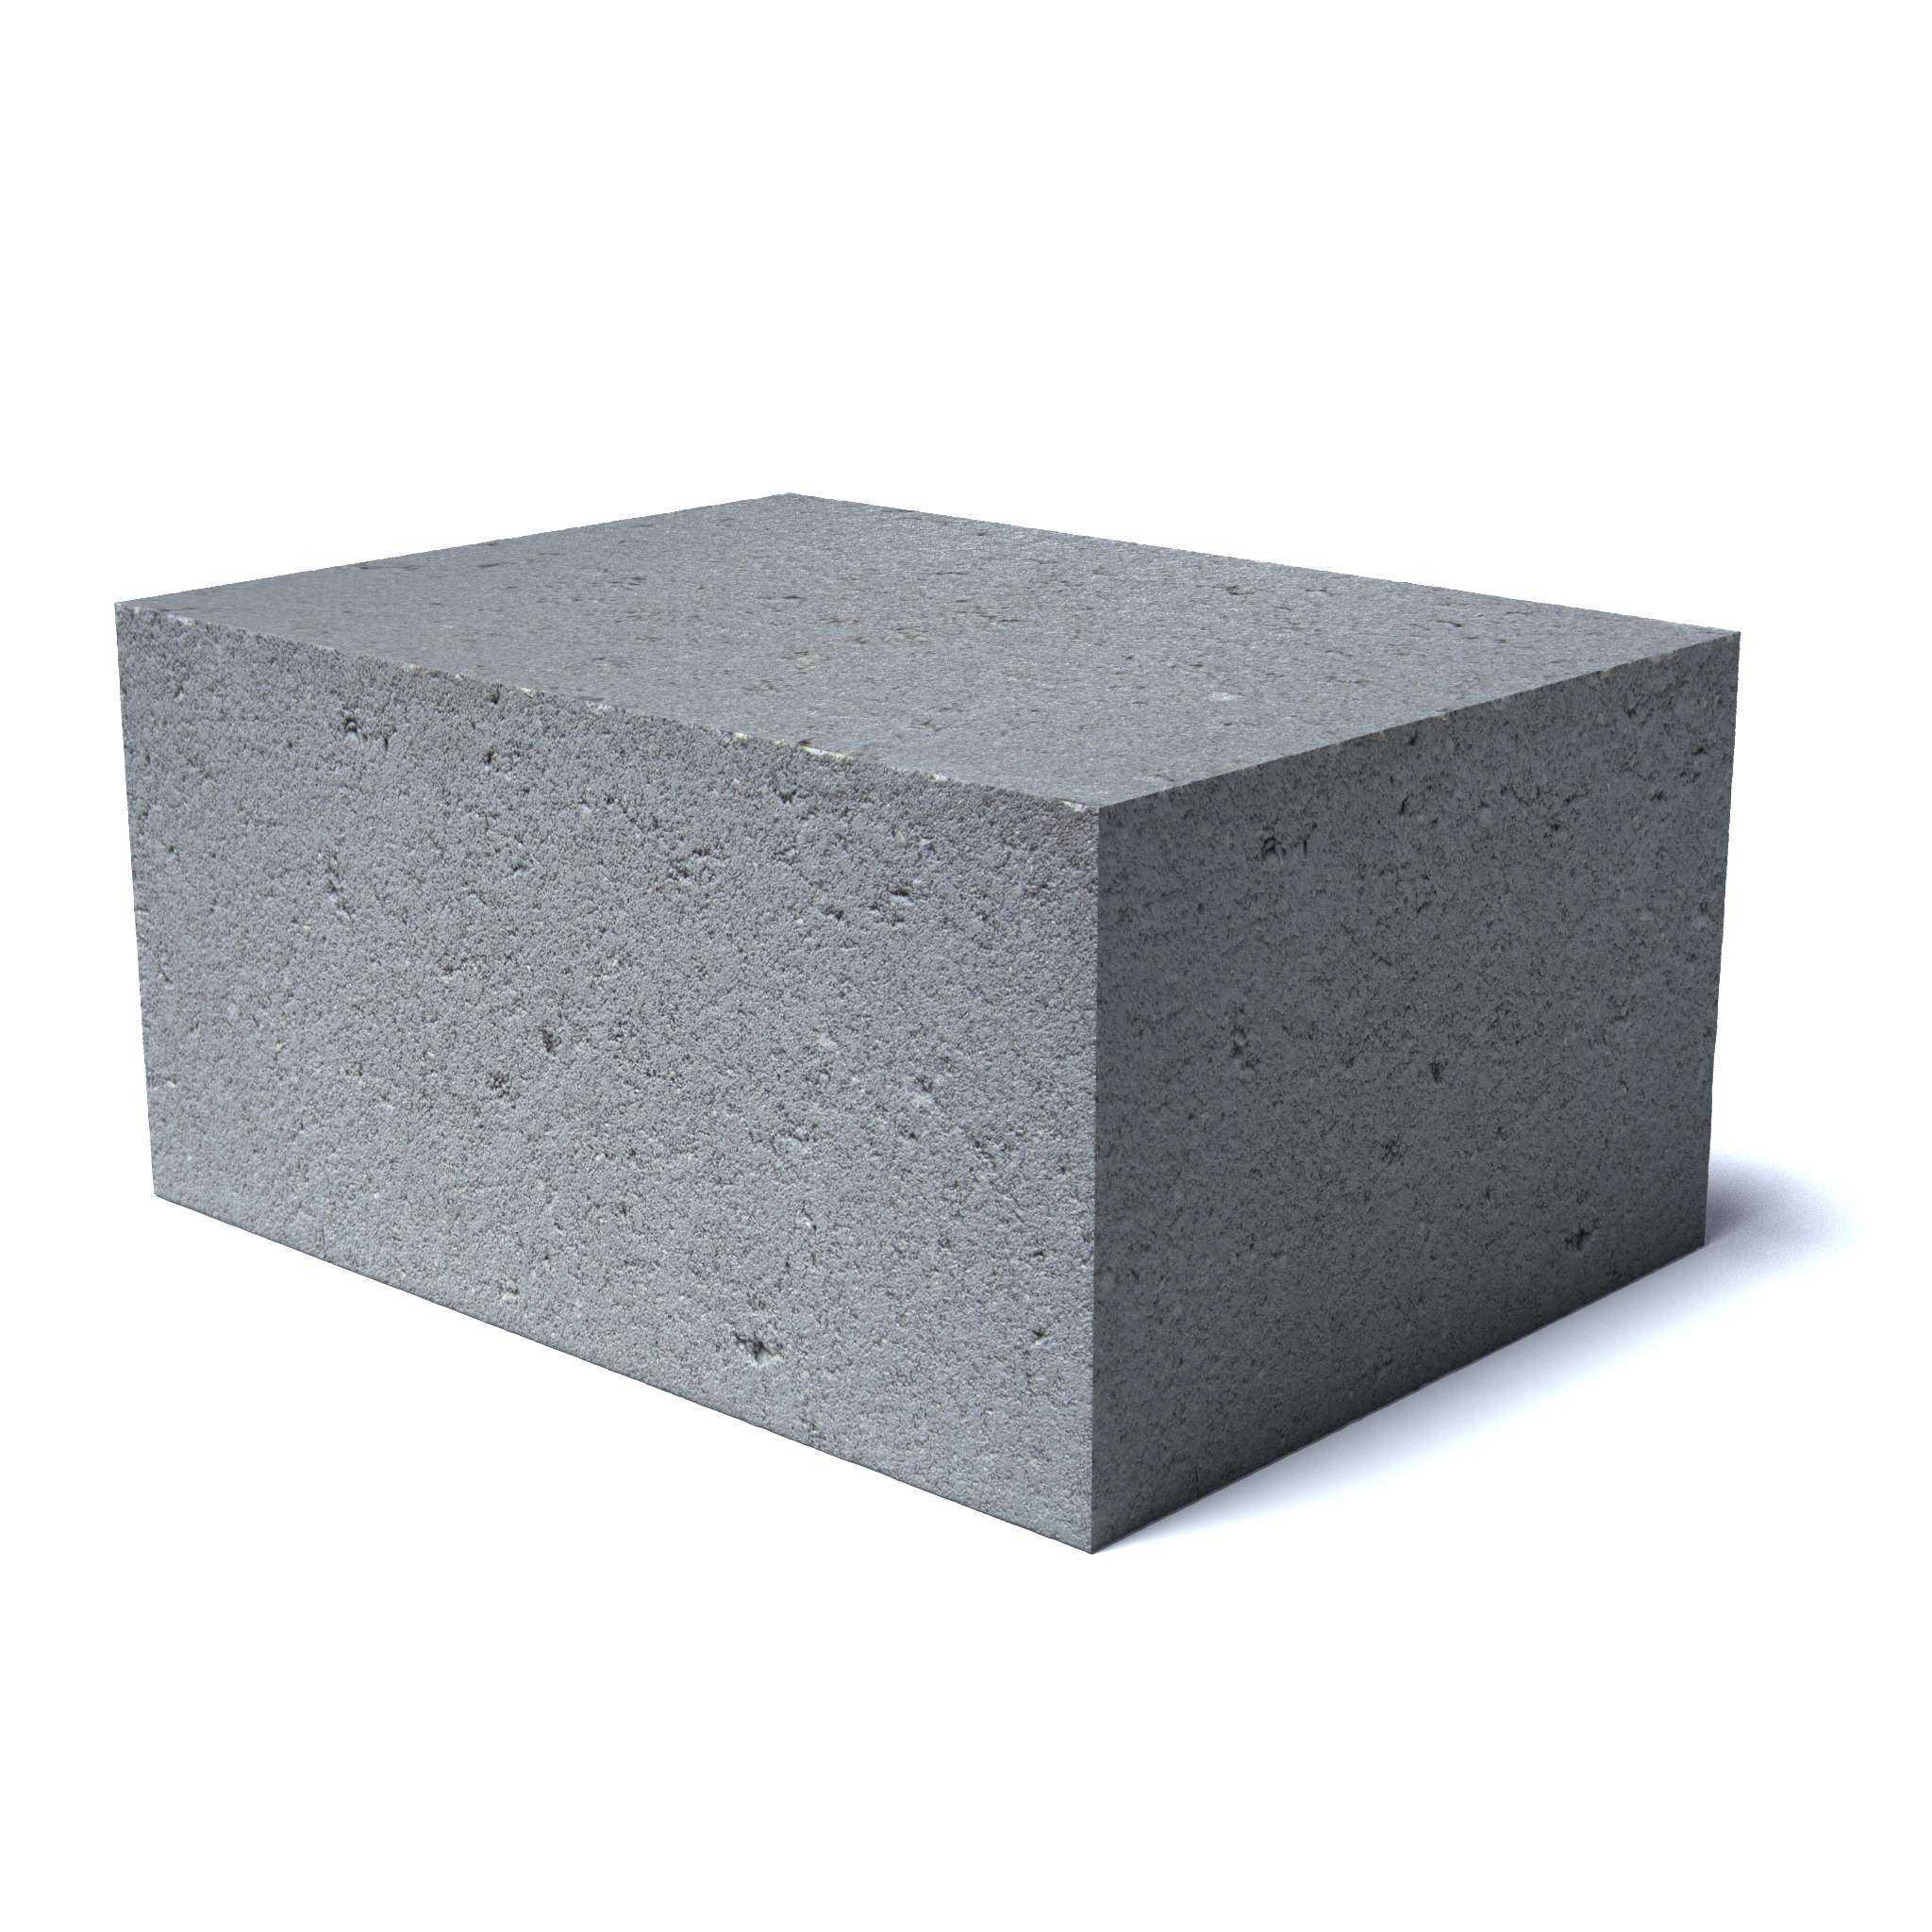 Заполнители для растворов и бетонов. виды заполнителей и их назначение в бетонах и растворах